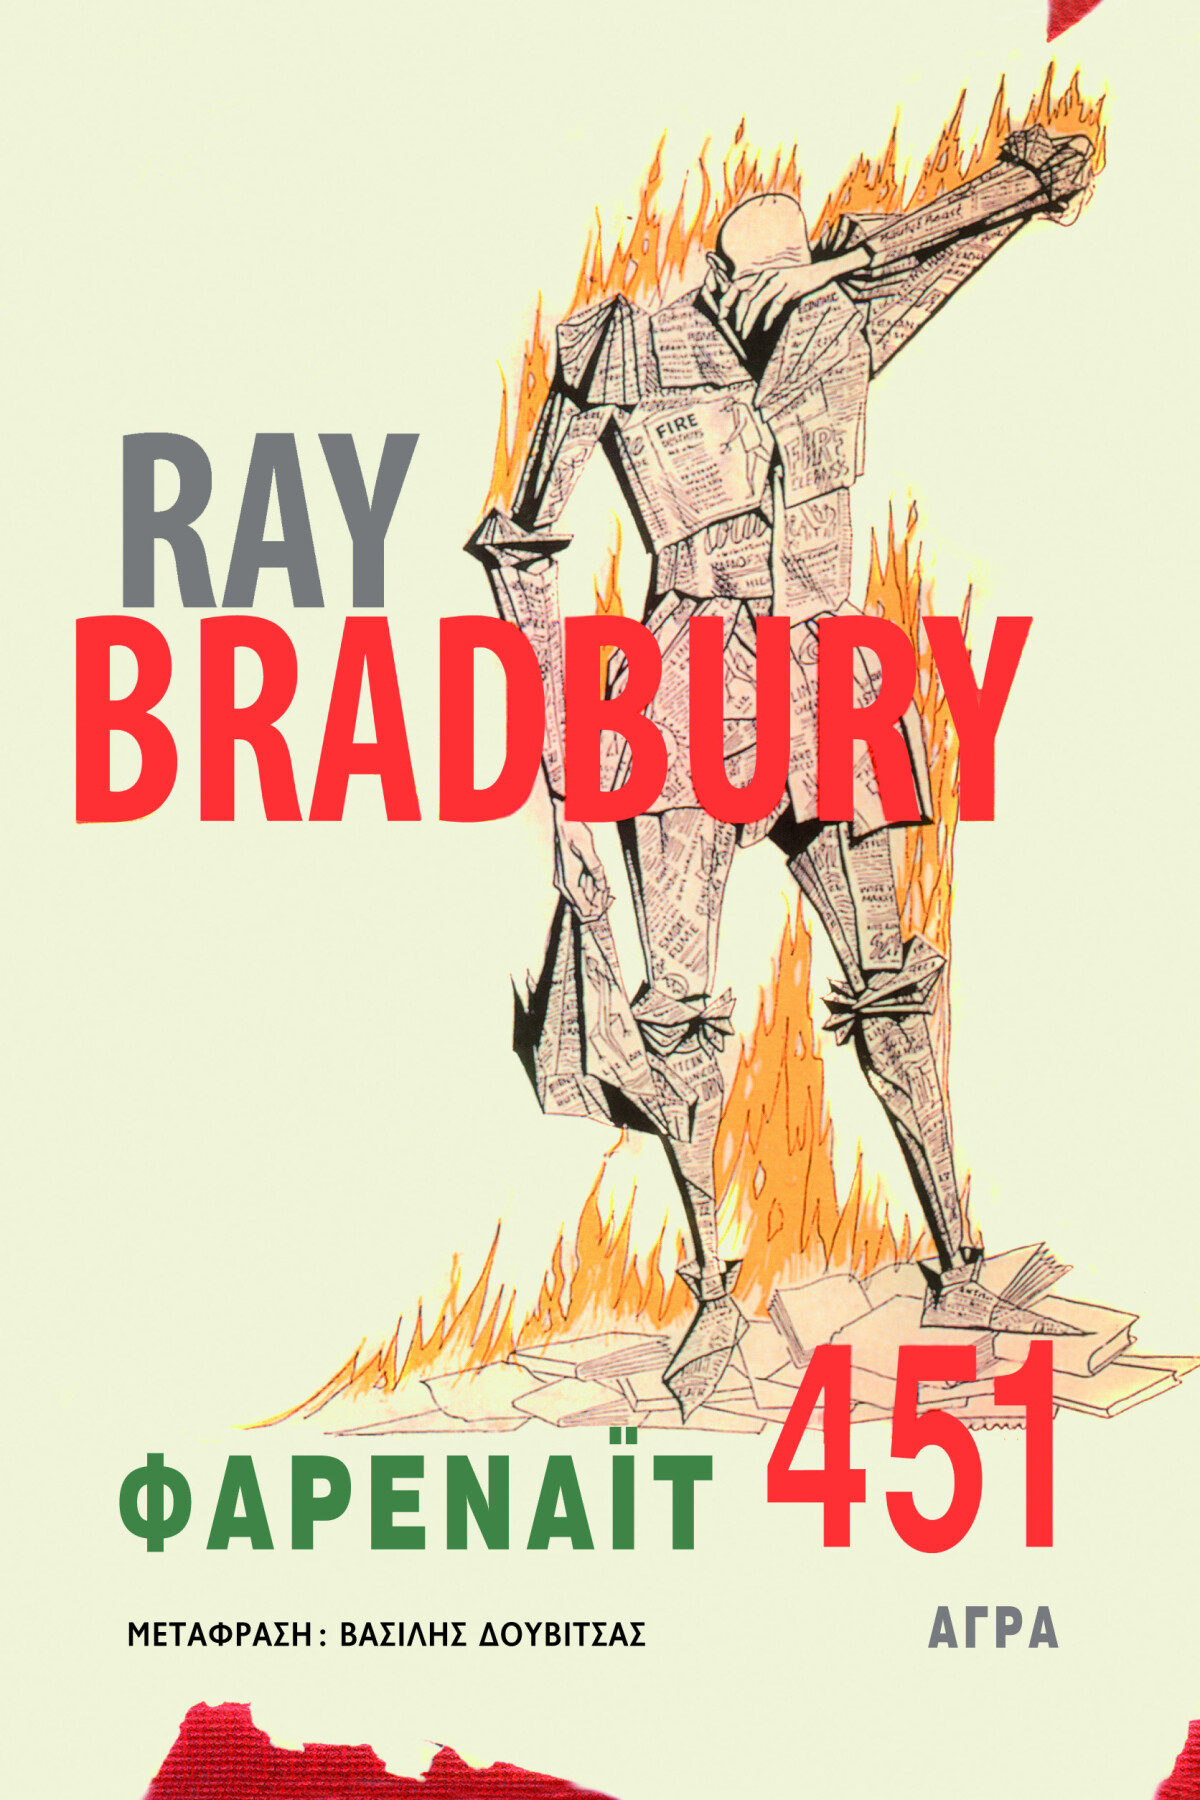 1086-bradbury-farenait-451